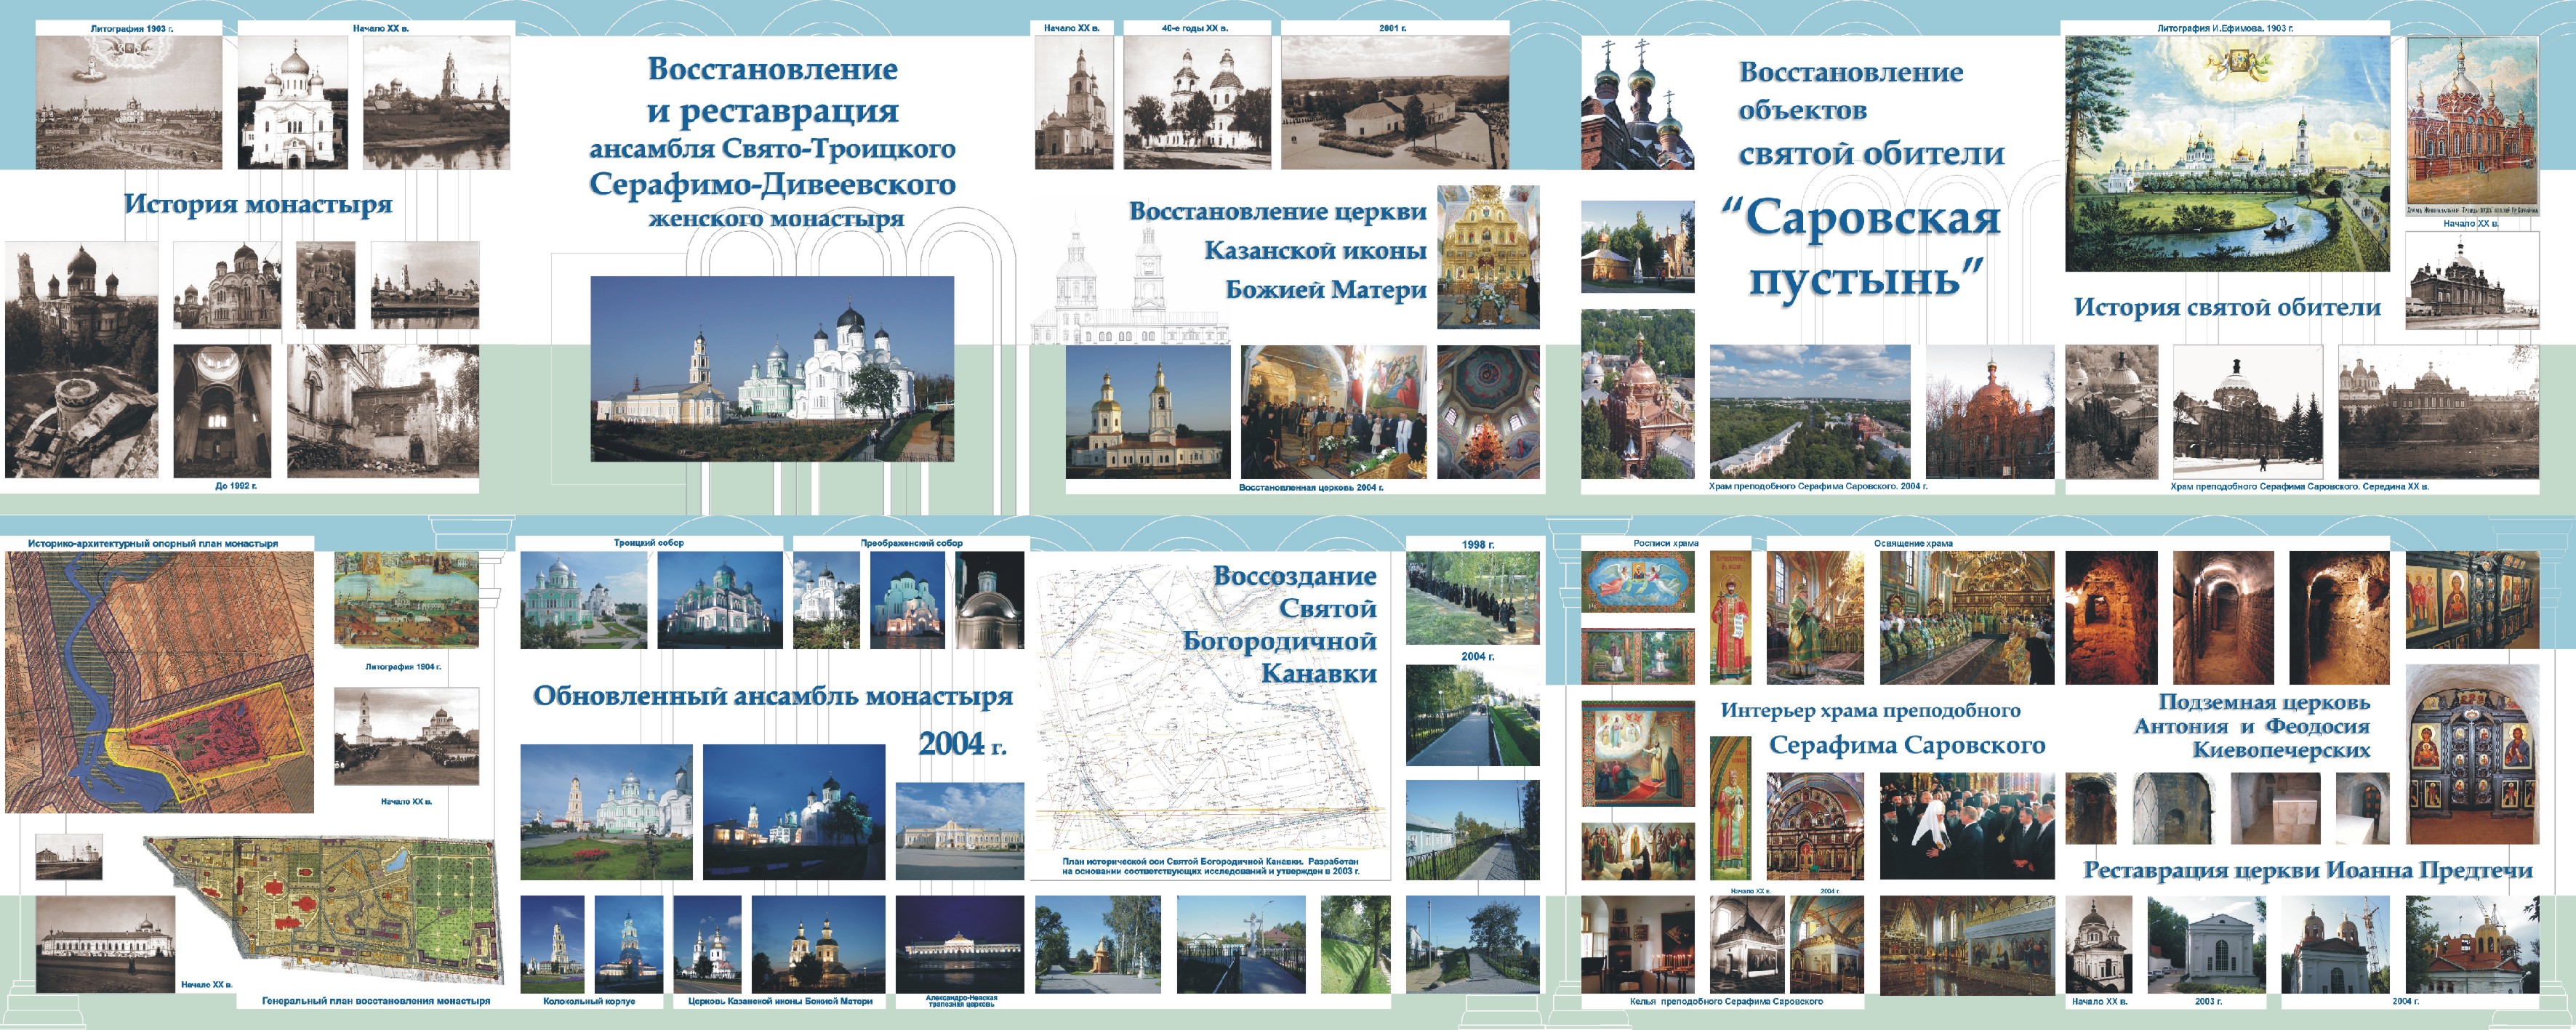 10 планшетов для Нижегородской Епархии